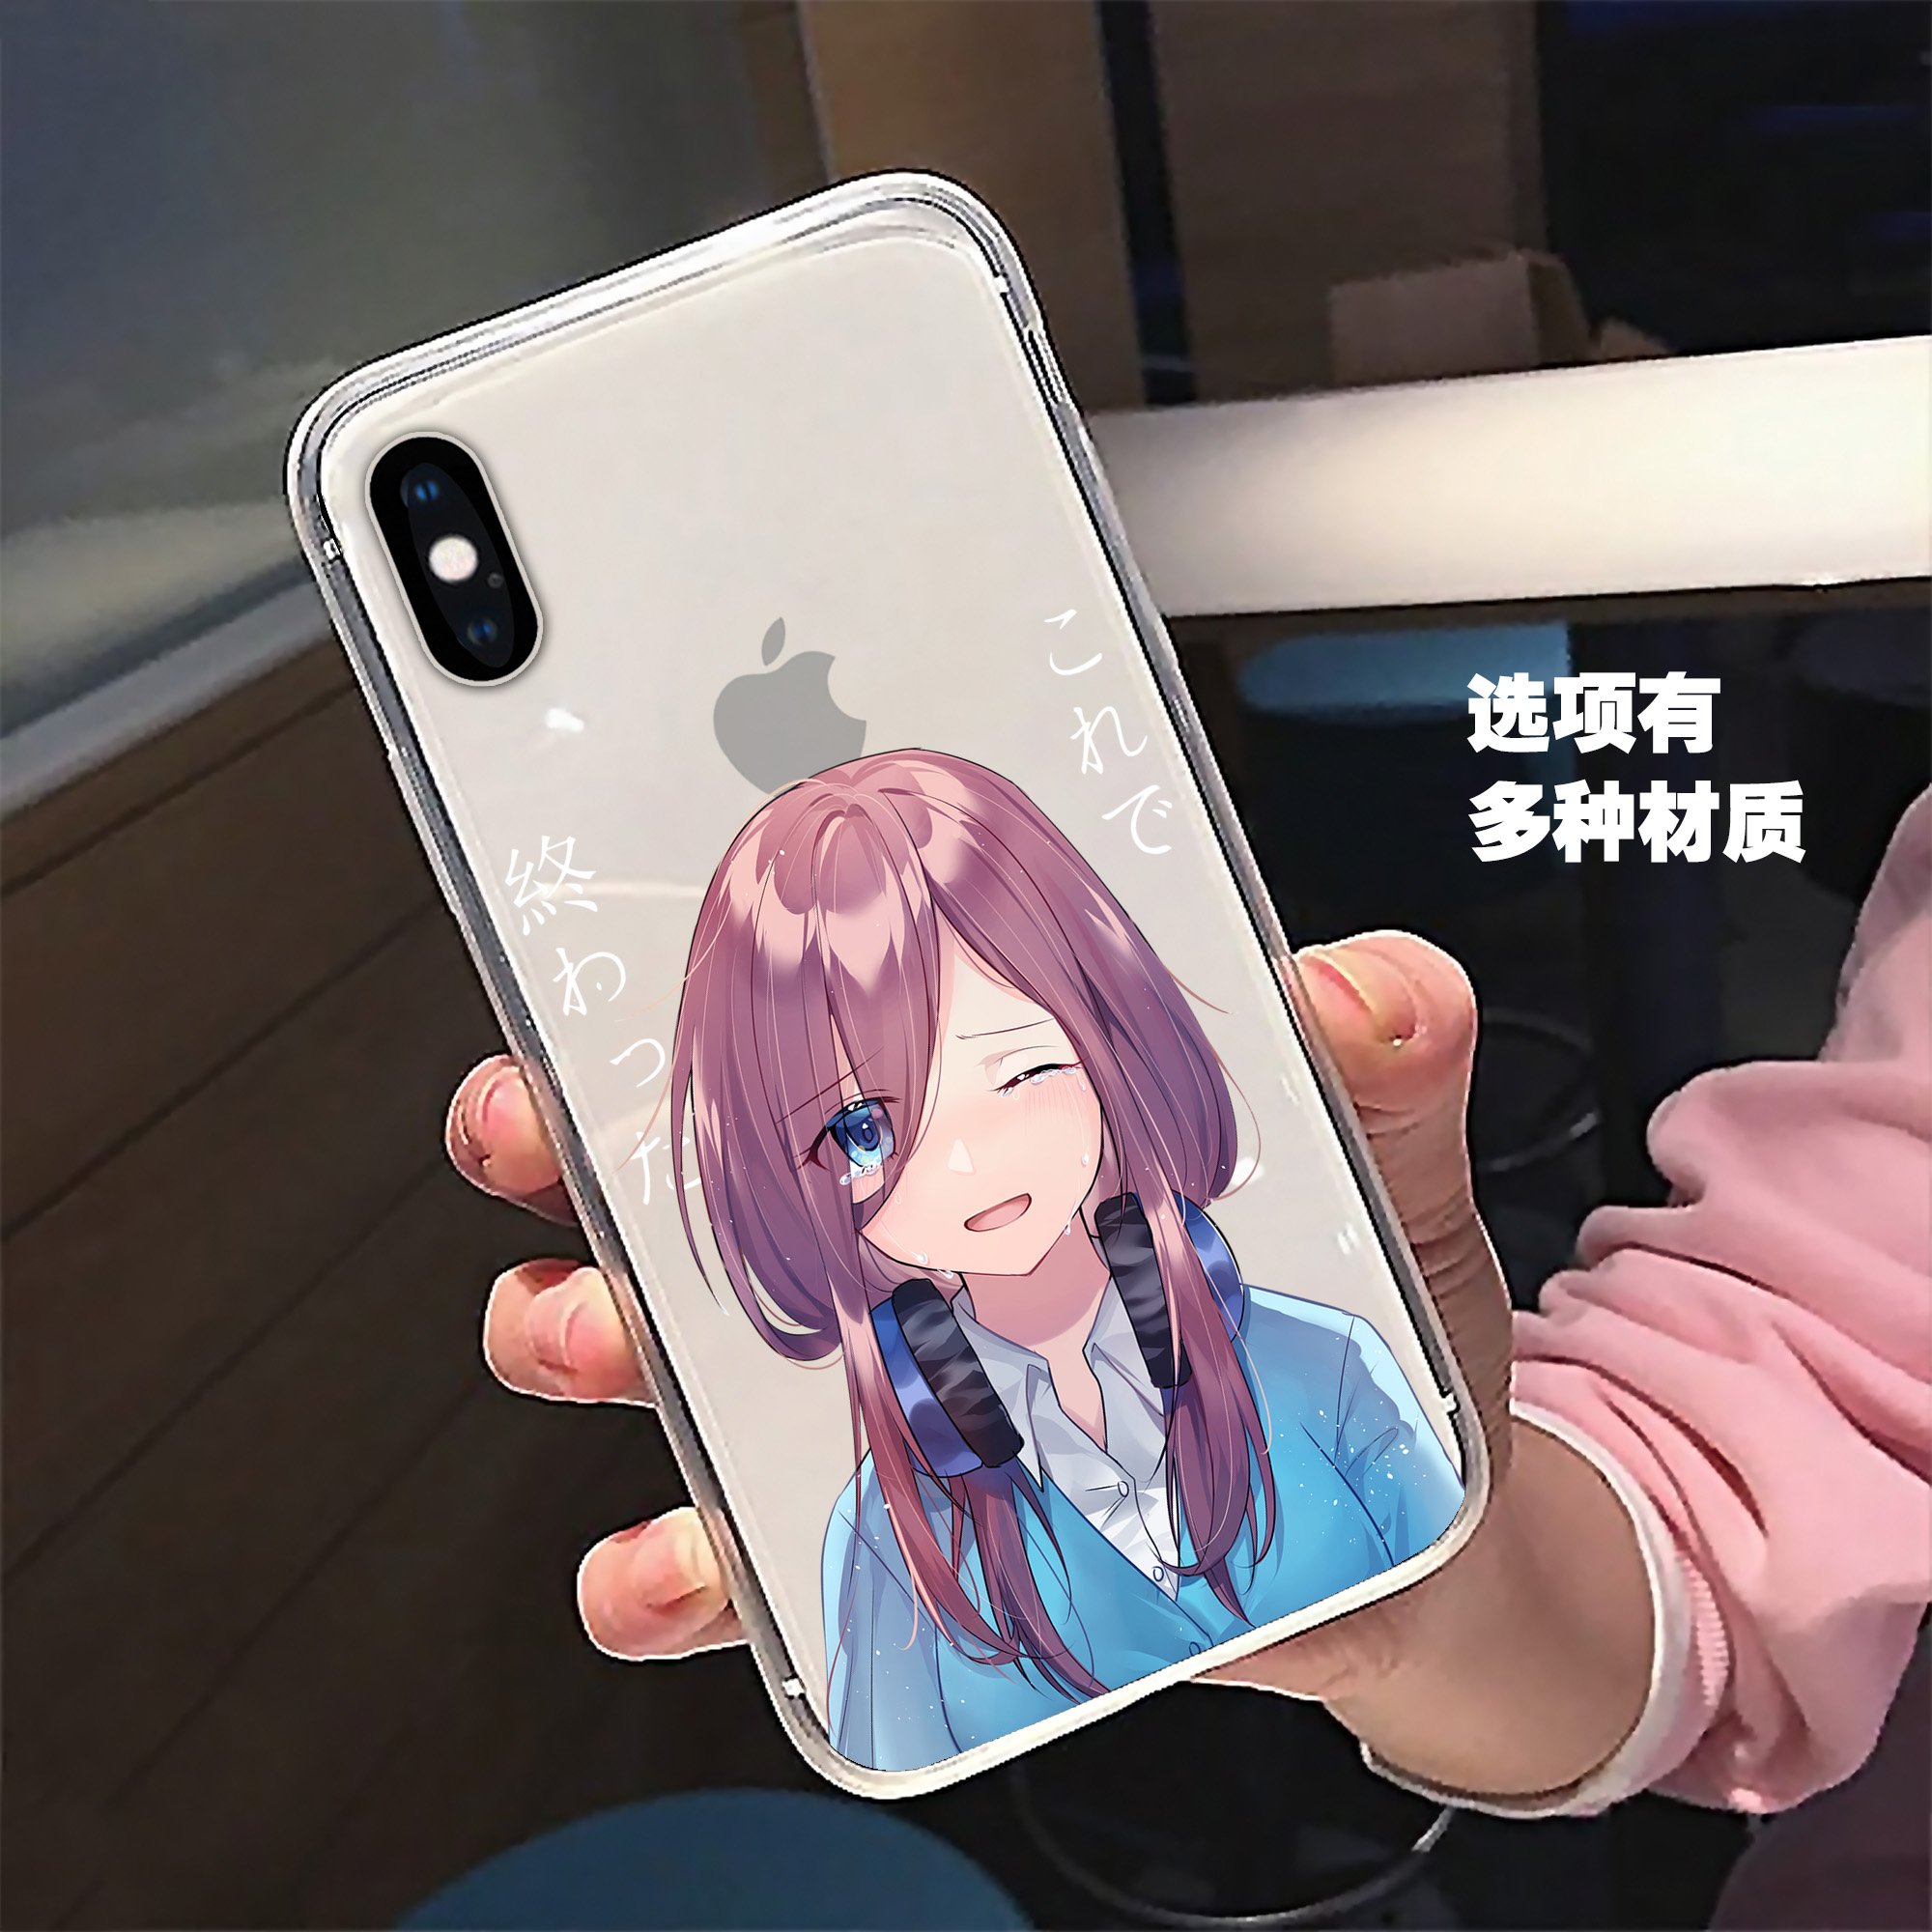 中野三玖动漫苹果xr手机壳透明有图案iphone11软8红米k30周边vivo